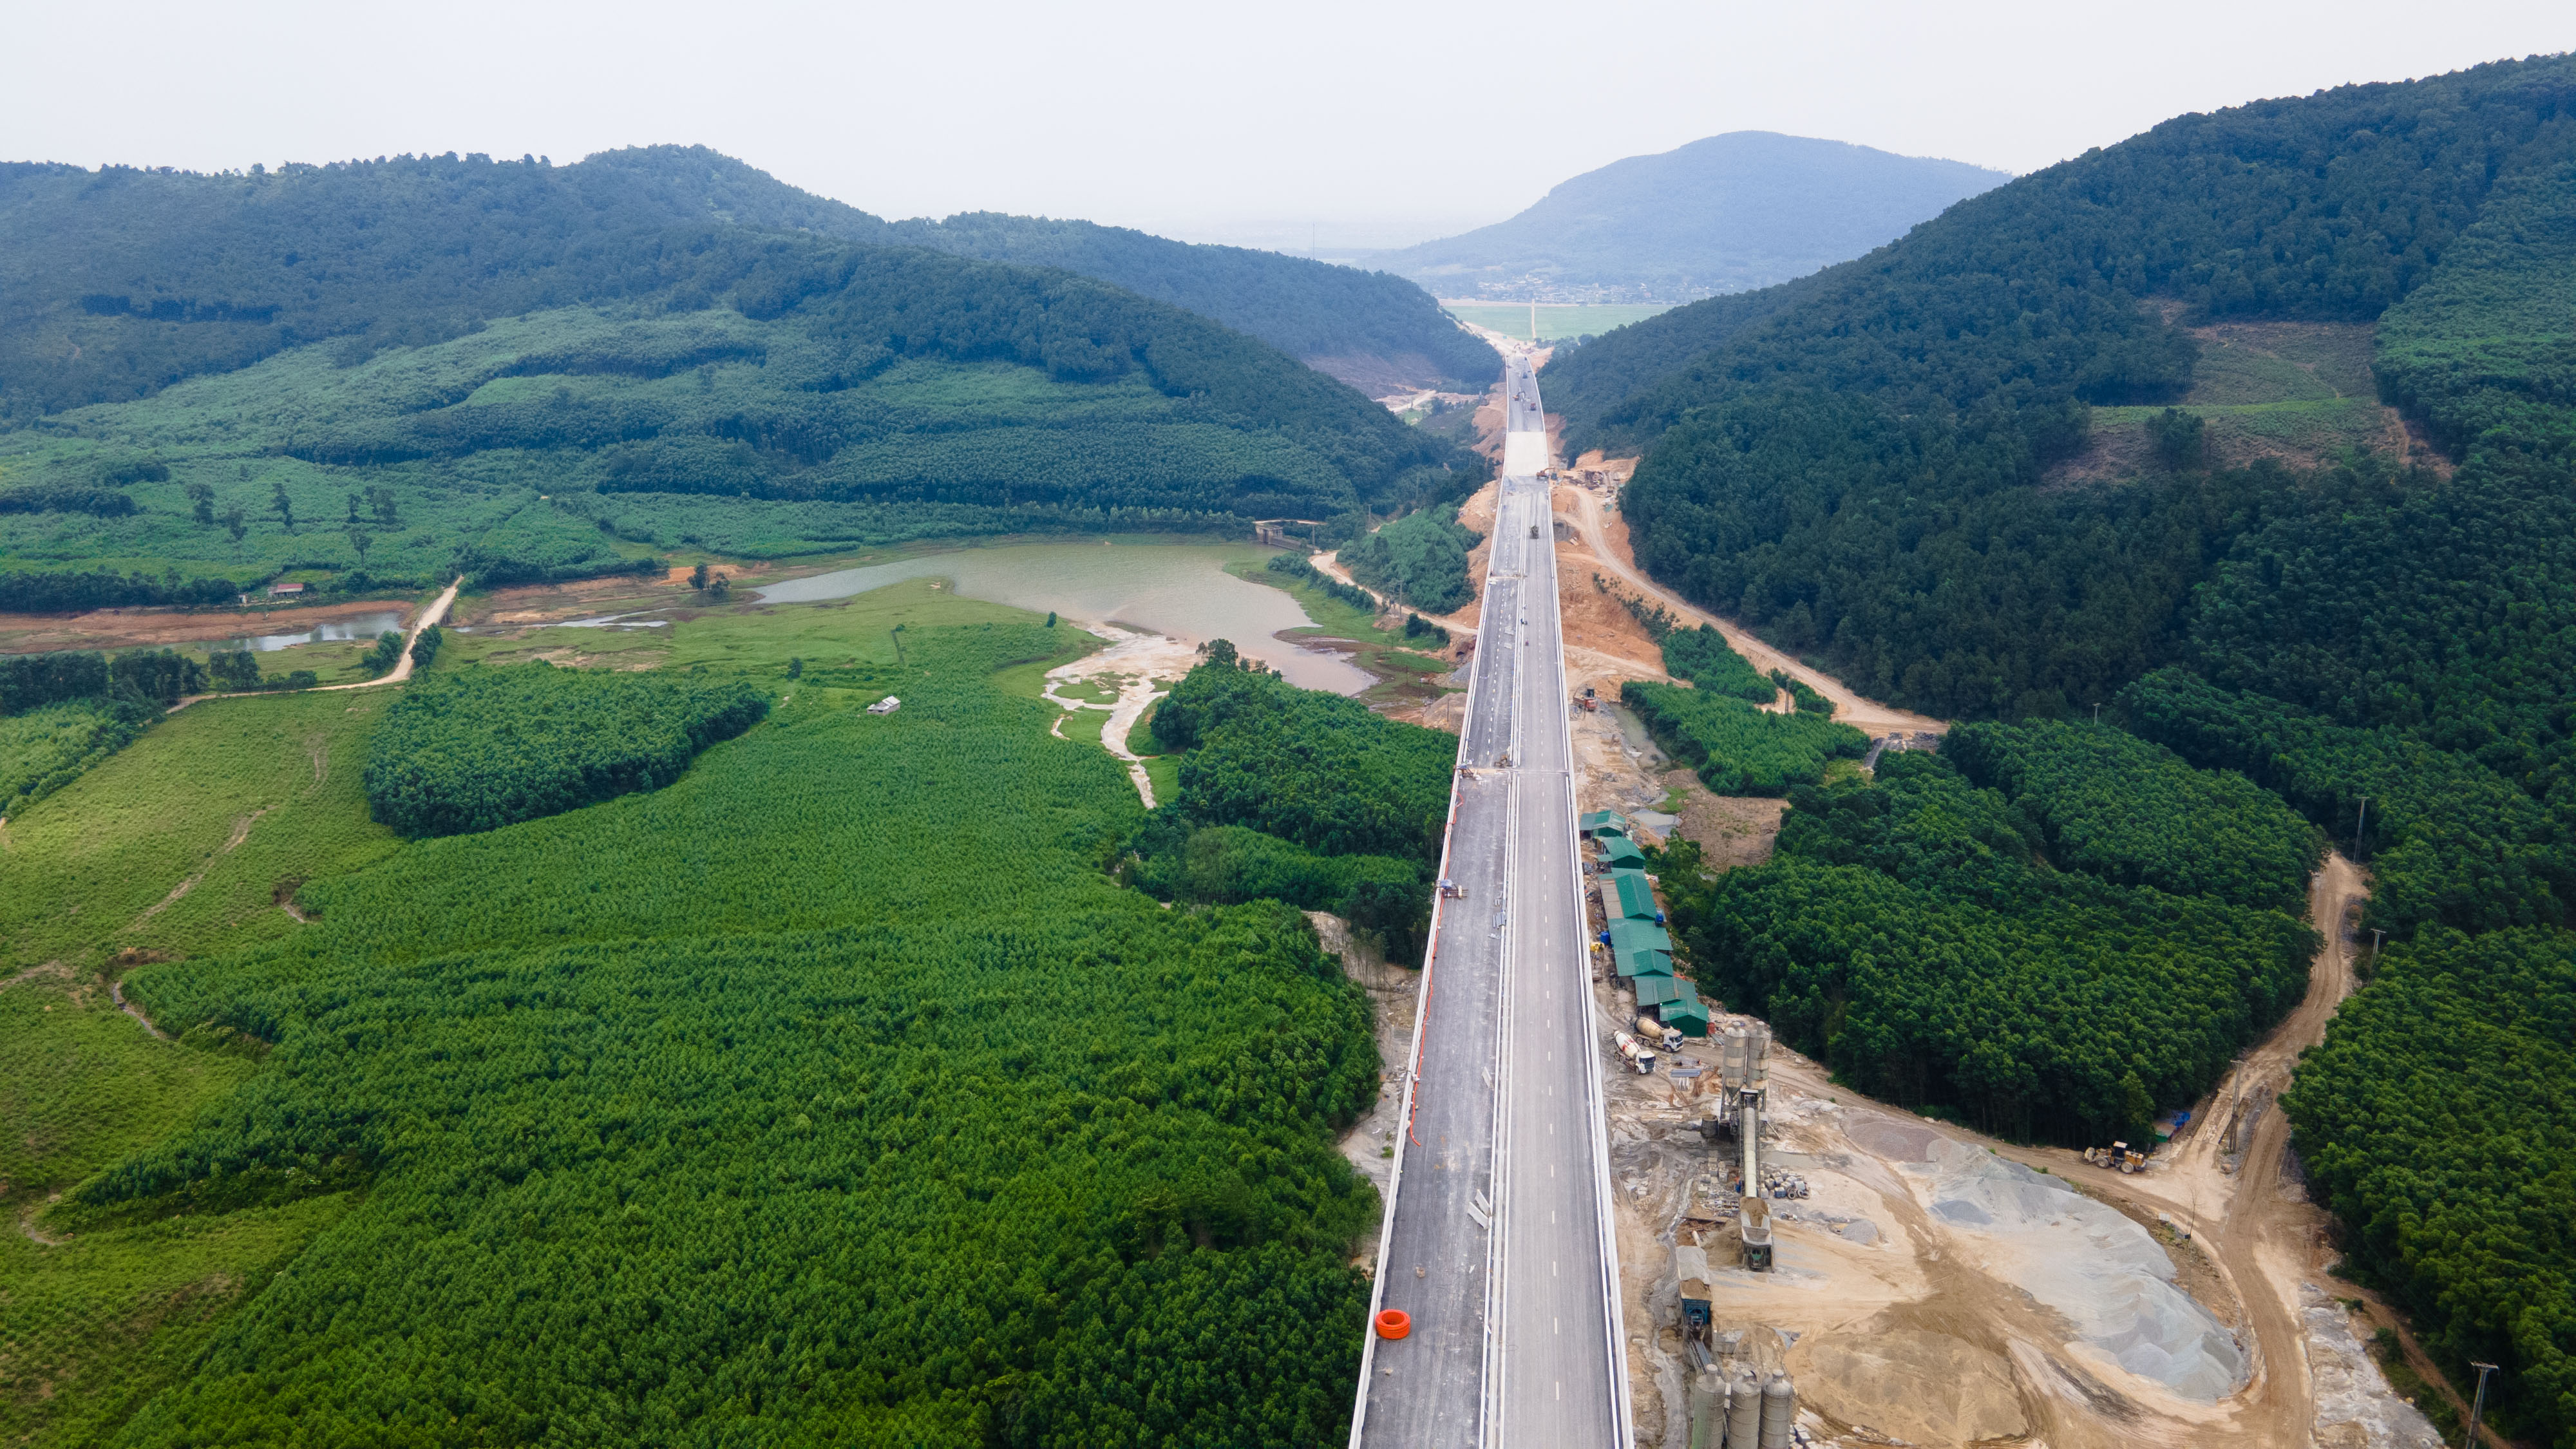 Cầu Xuân Dương 2 là 1 trong những cây cầu nằm trên cung đường đẹp nhất của tuyến cao tốc Bắc - Nam đi qua xứ Nghệ. Xung quanh là quang cảnh đồi núi và hồ nước trập trùng.